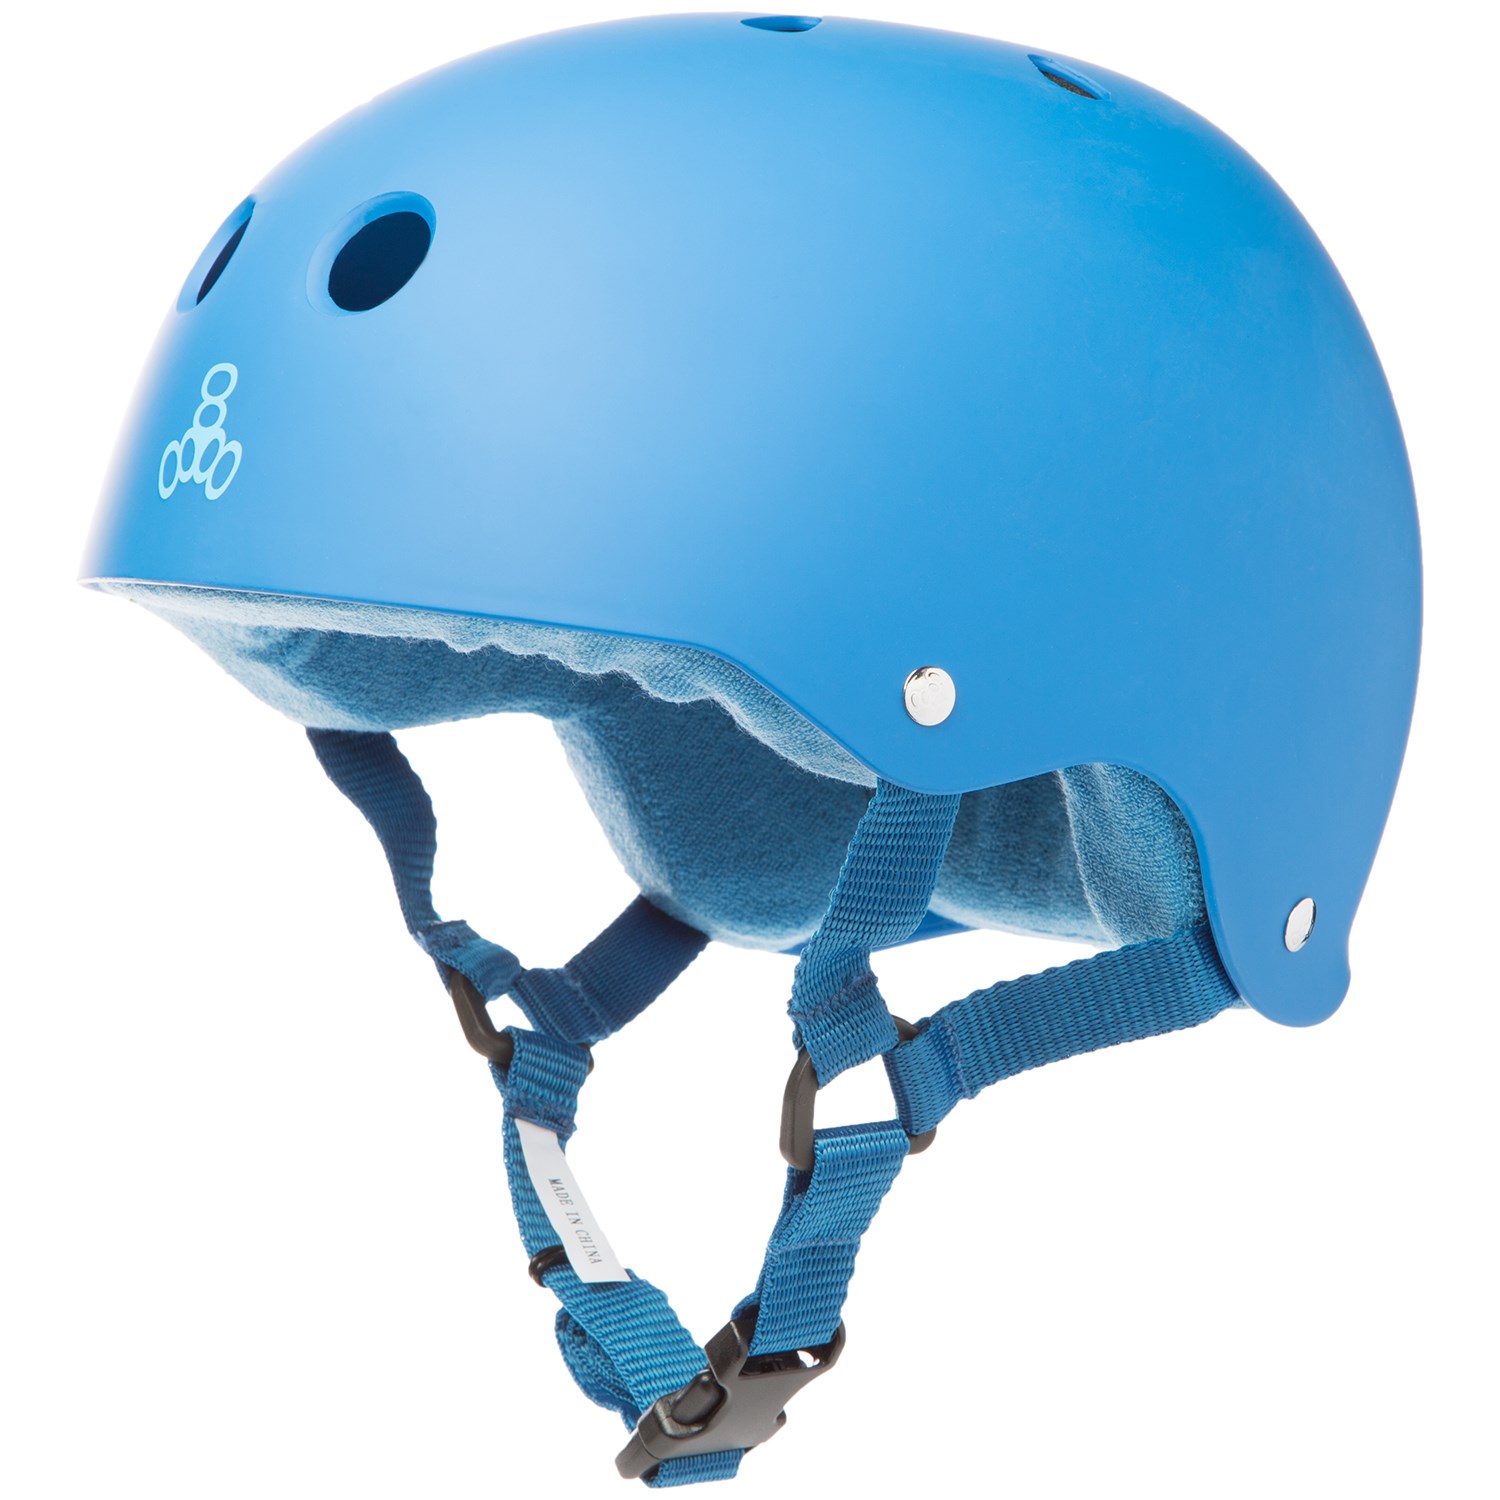 Triple 8 Sweatsaver Liner Skateboard Helmet | evo